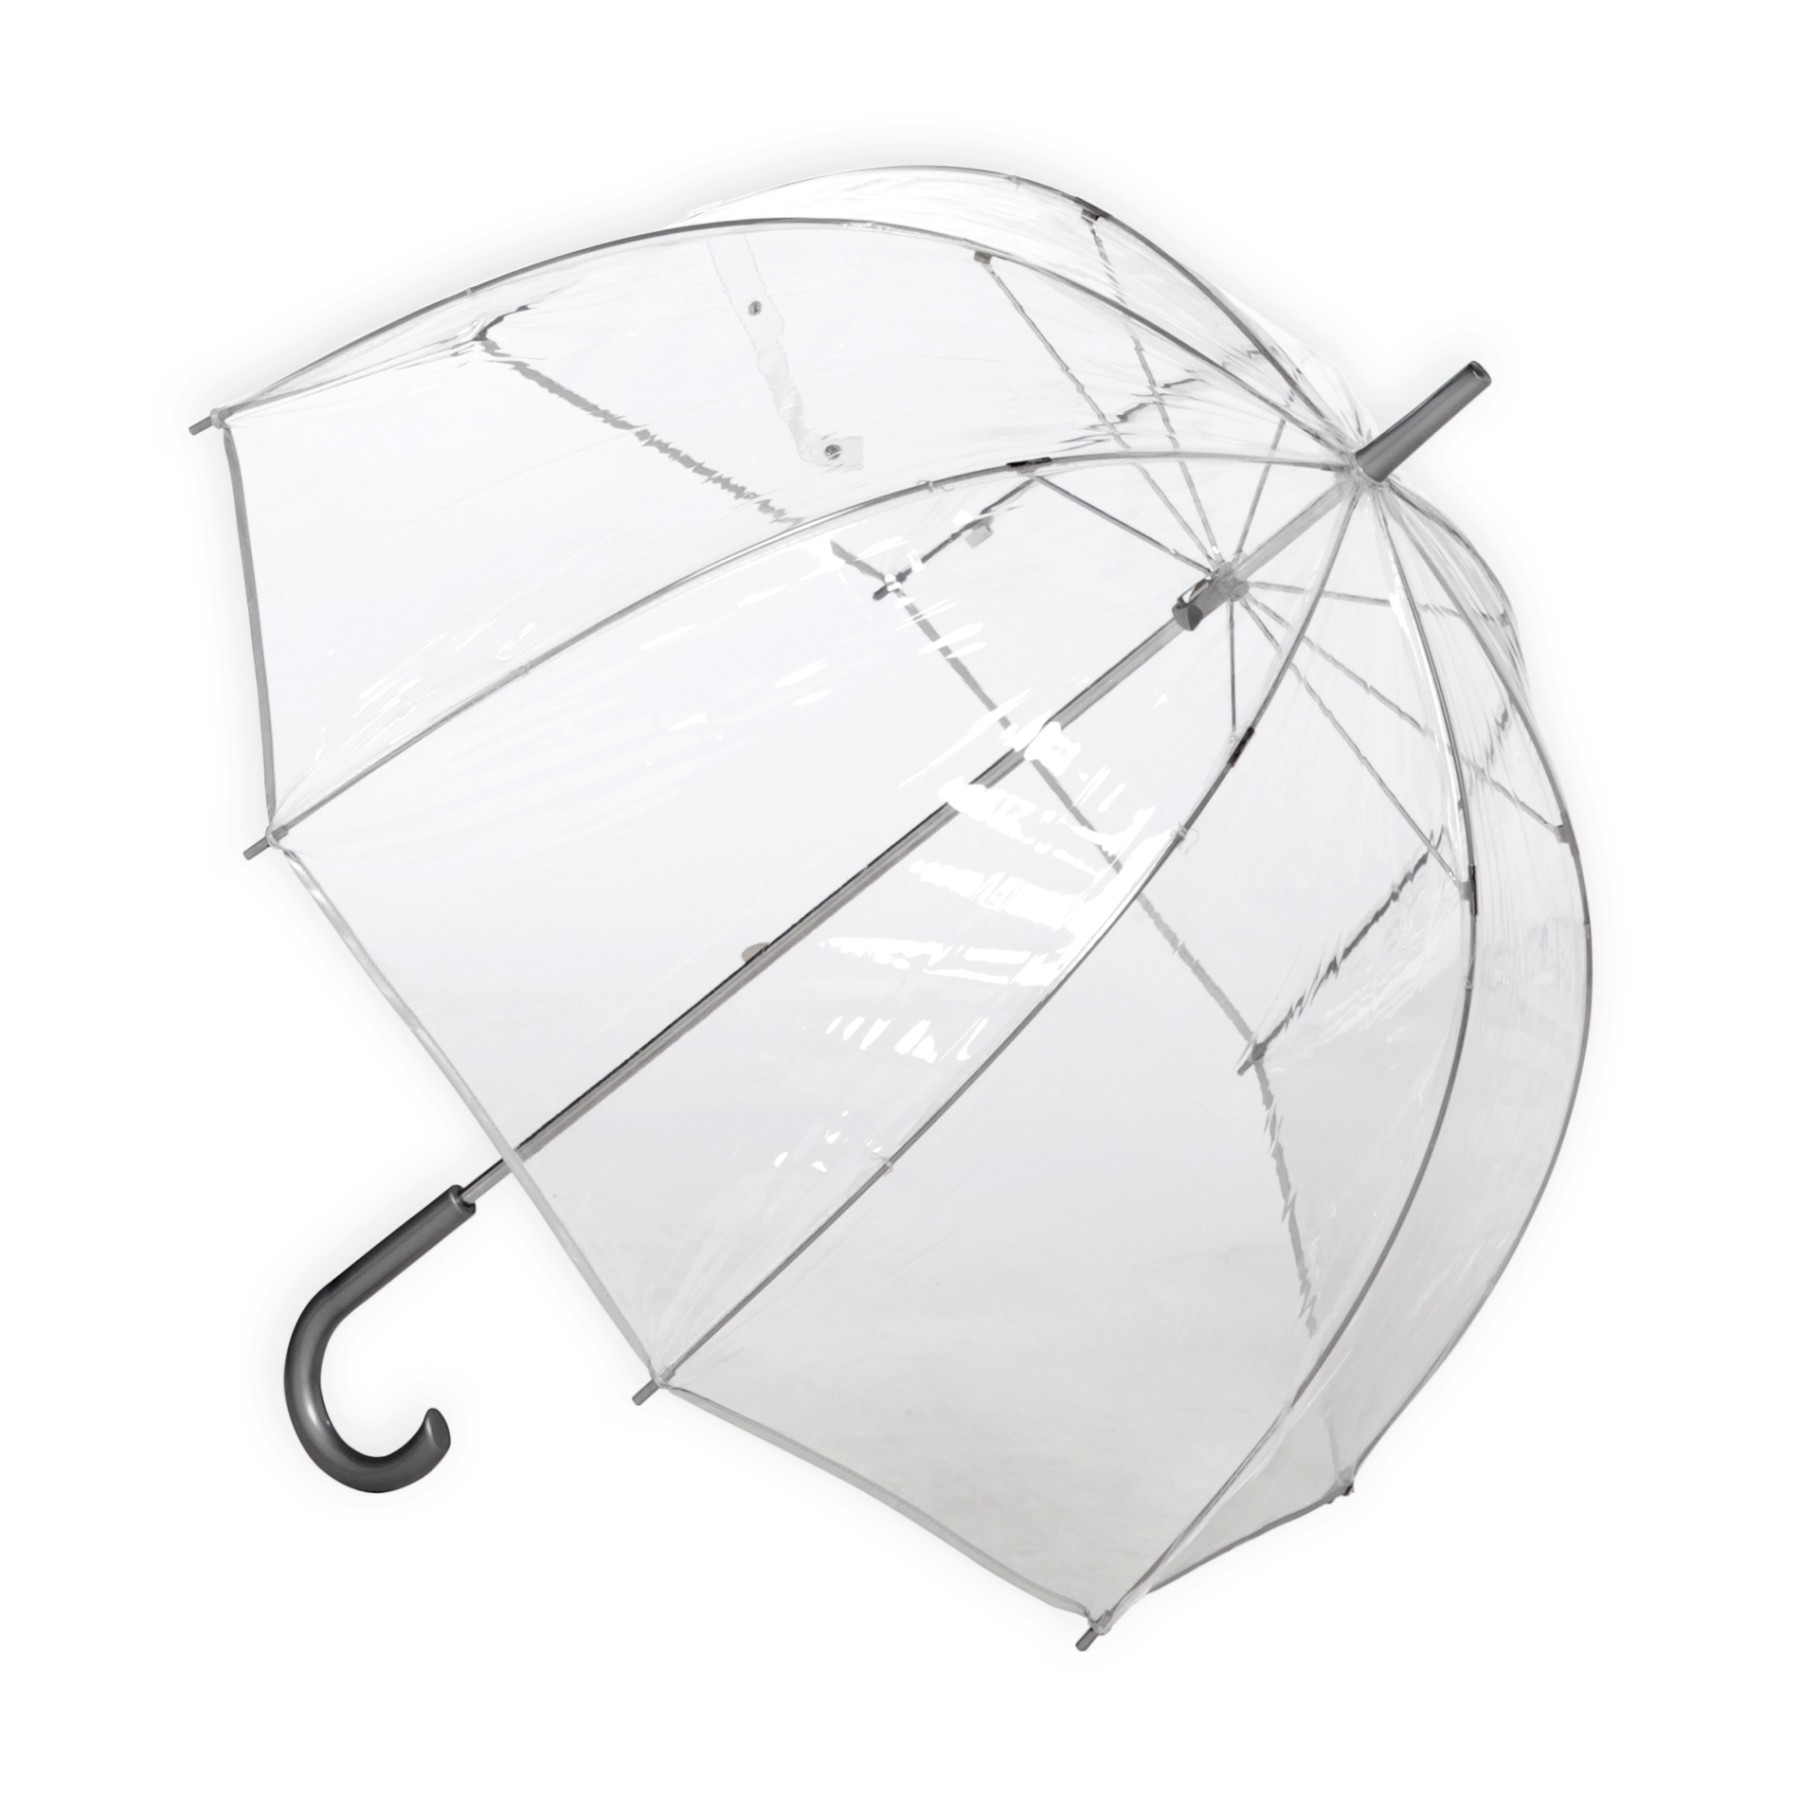 Totes Women's Bubble Fashion Umbrella